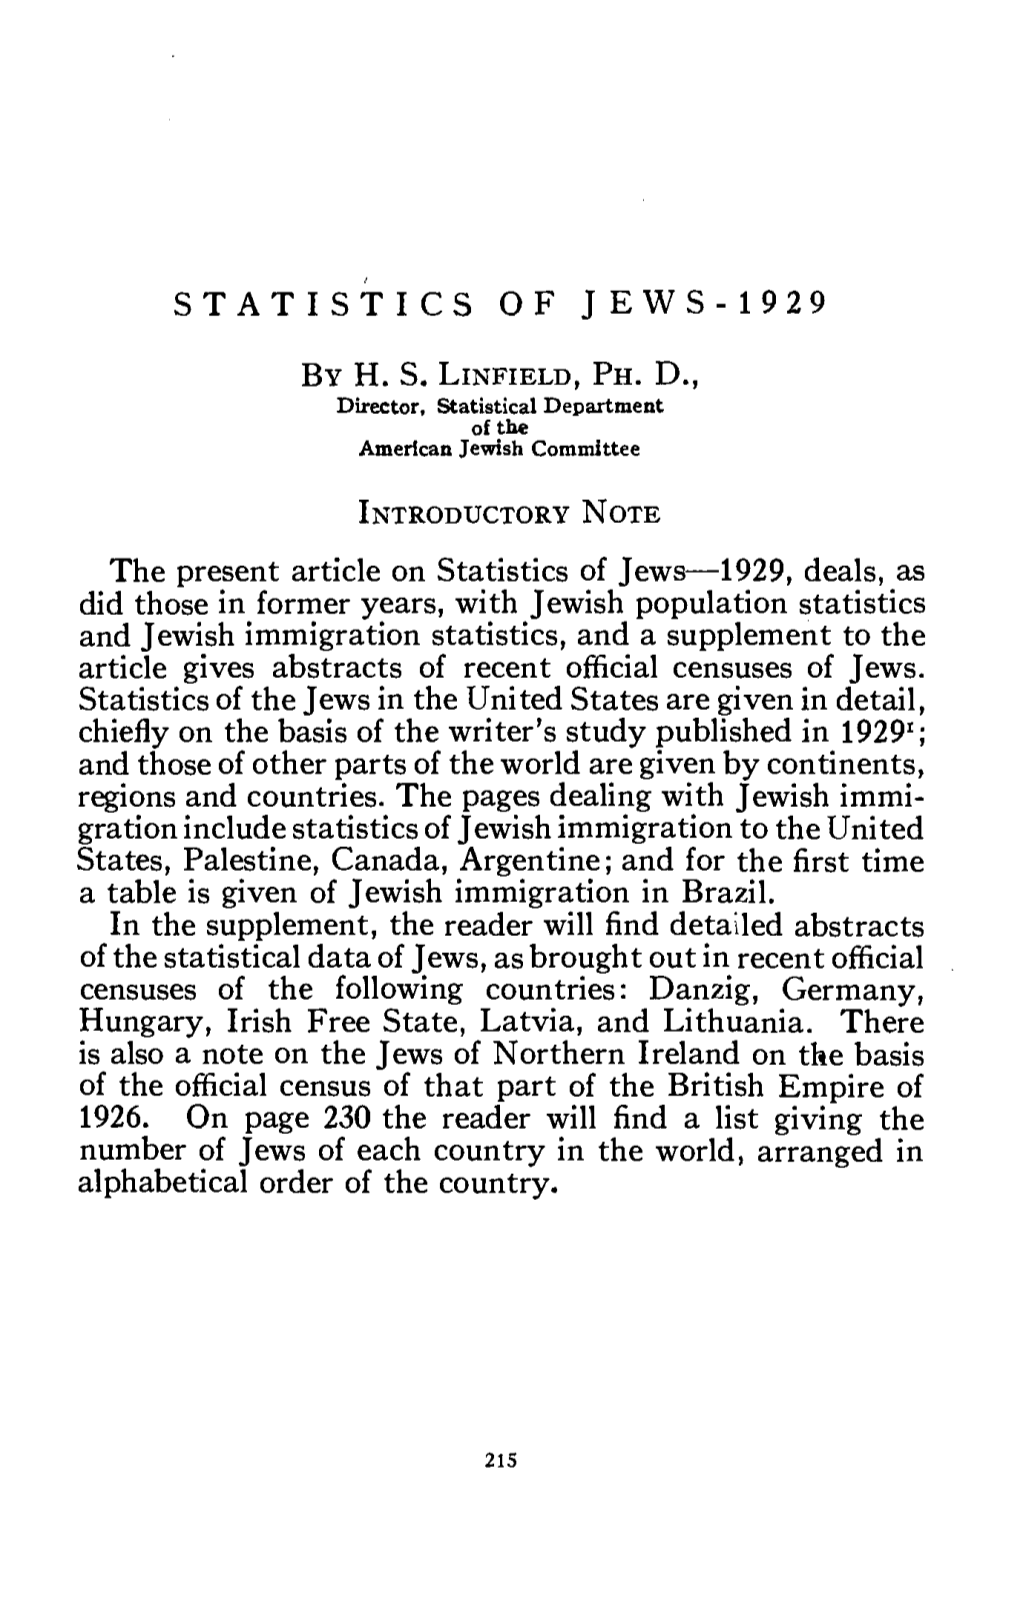 Statistics of Jews-1929